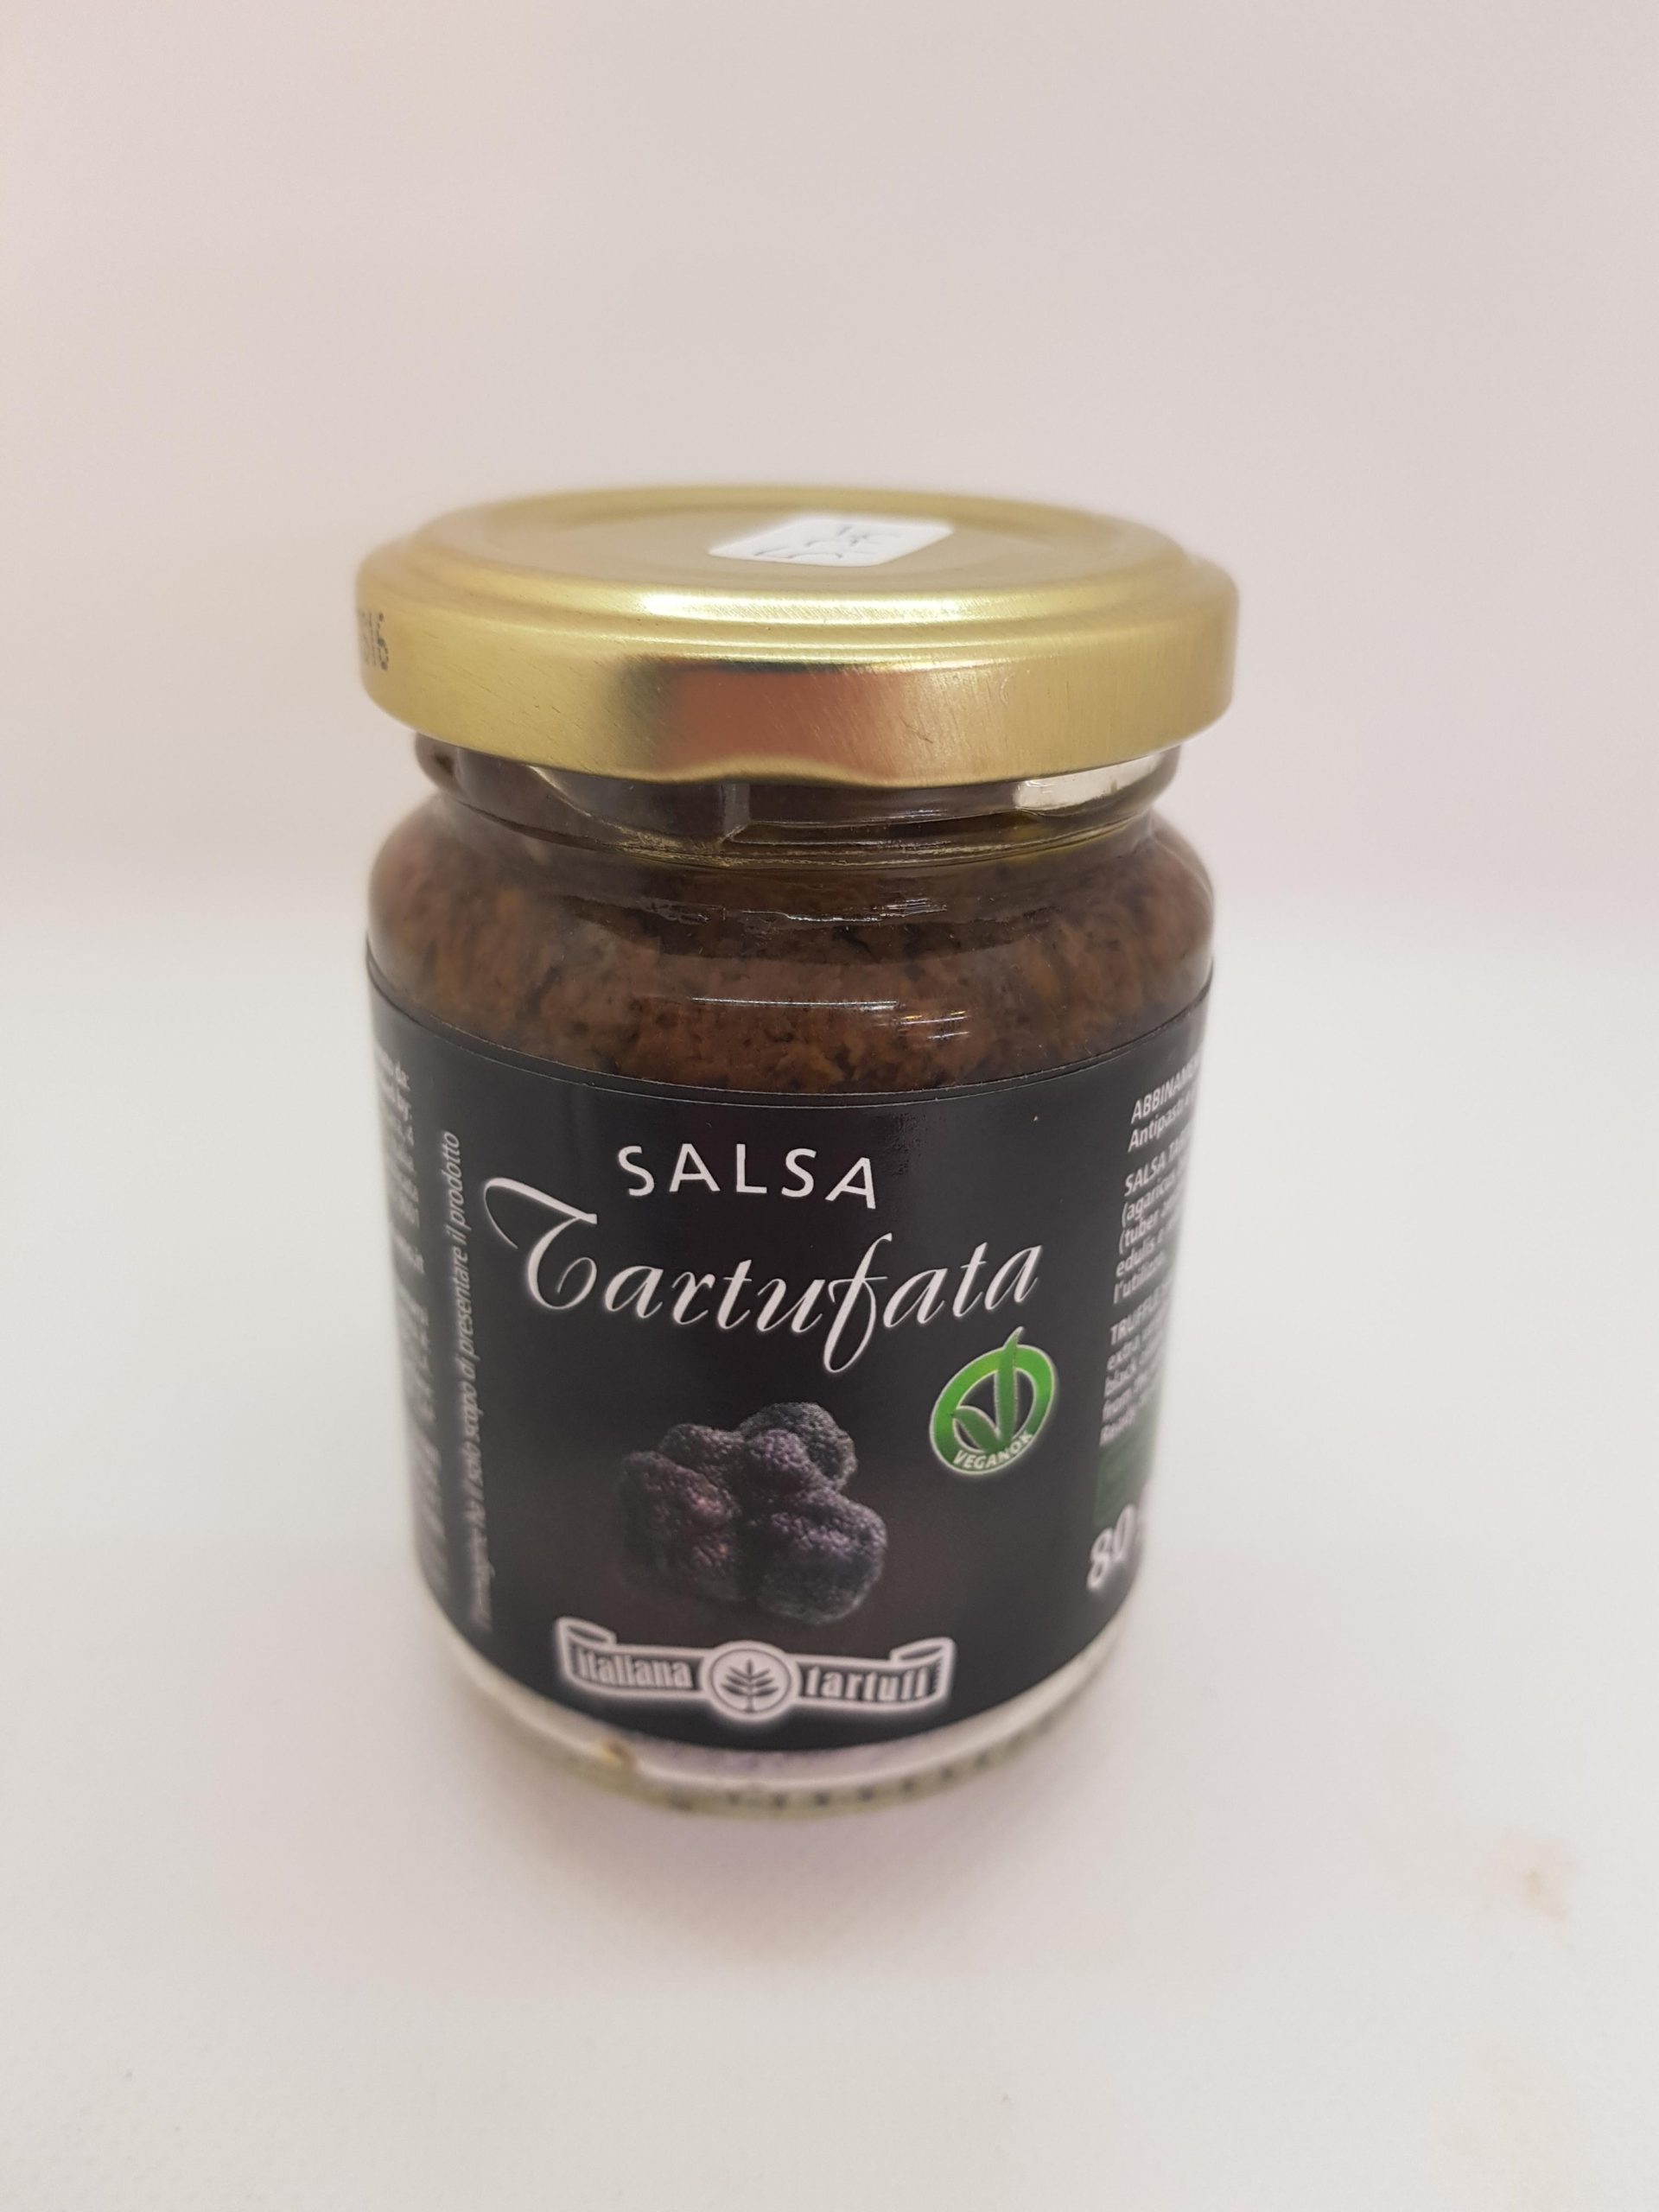 Salsa Tartufata 90g : le pot de 90 g à Prix Carrefour